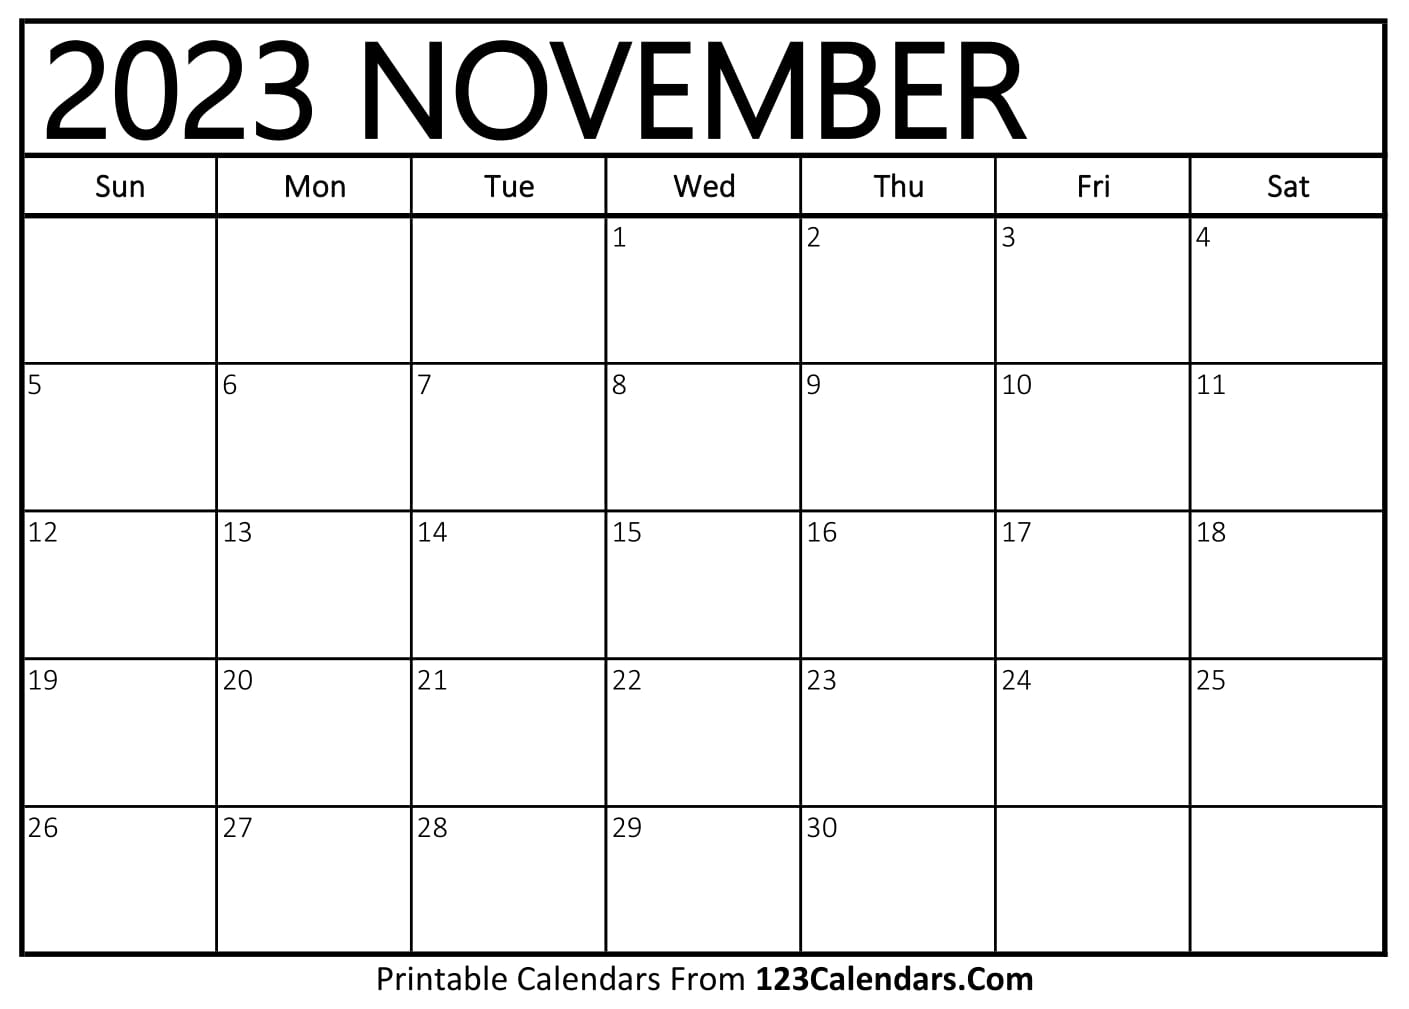 november-2023-calendar-123calendars-get-calendar-2023-update